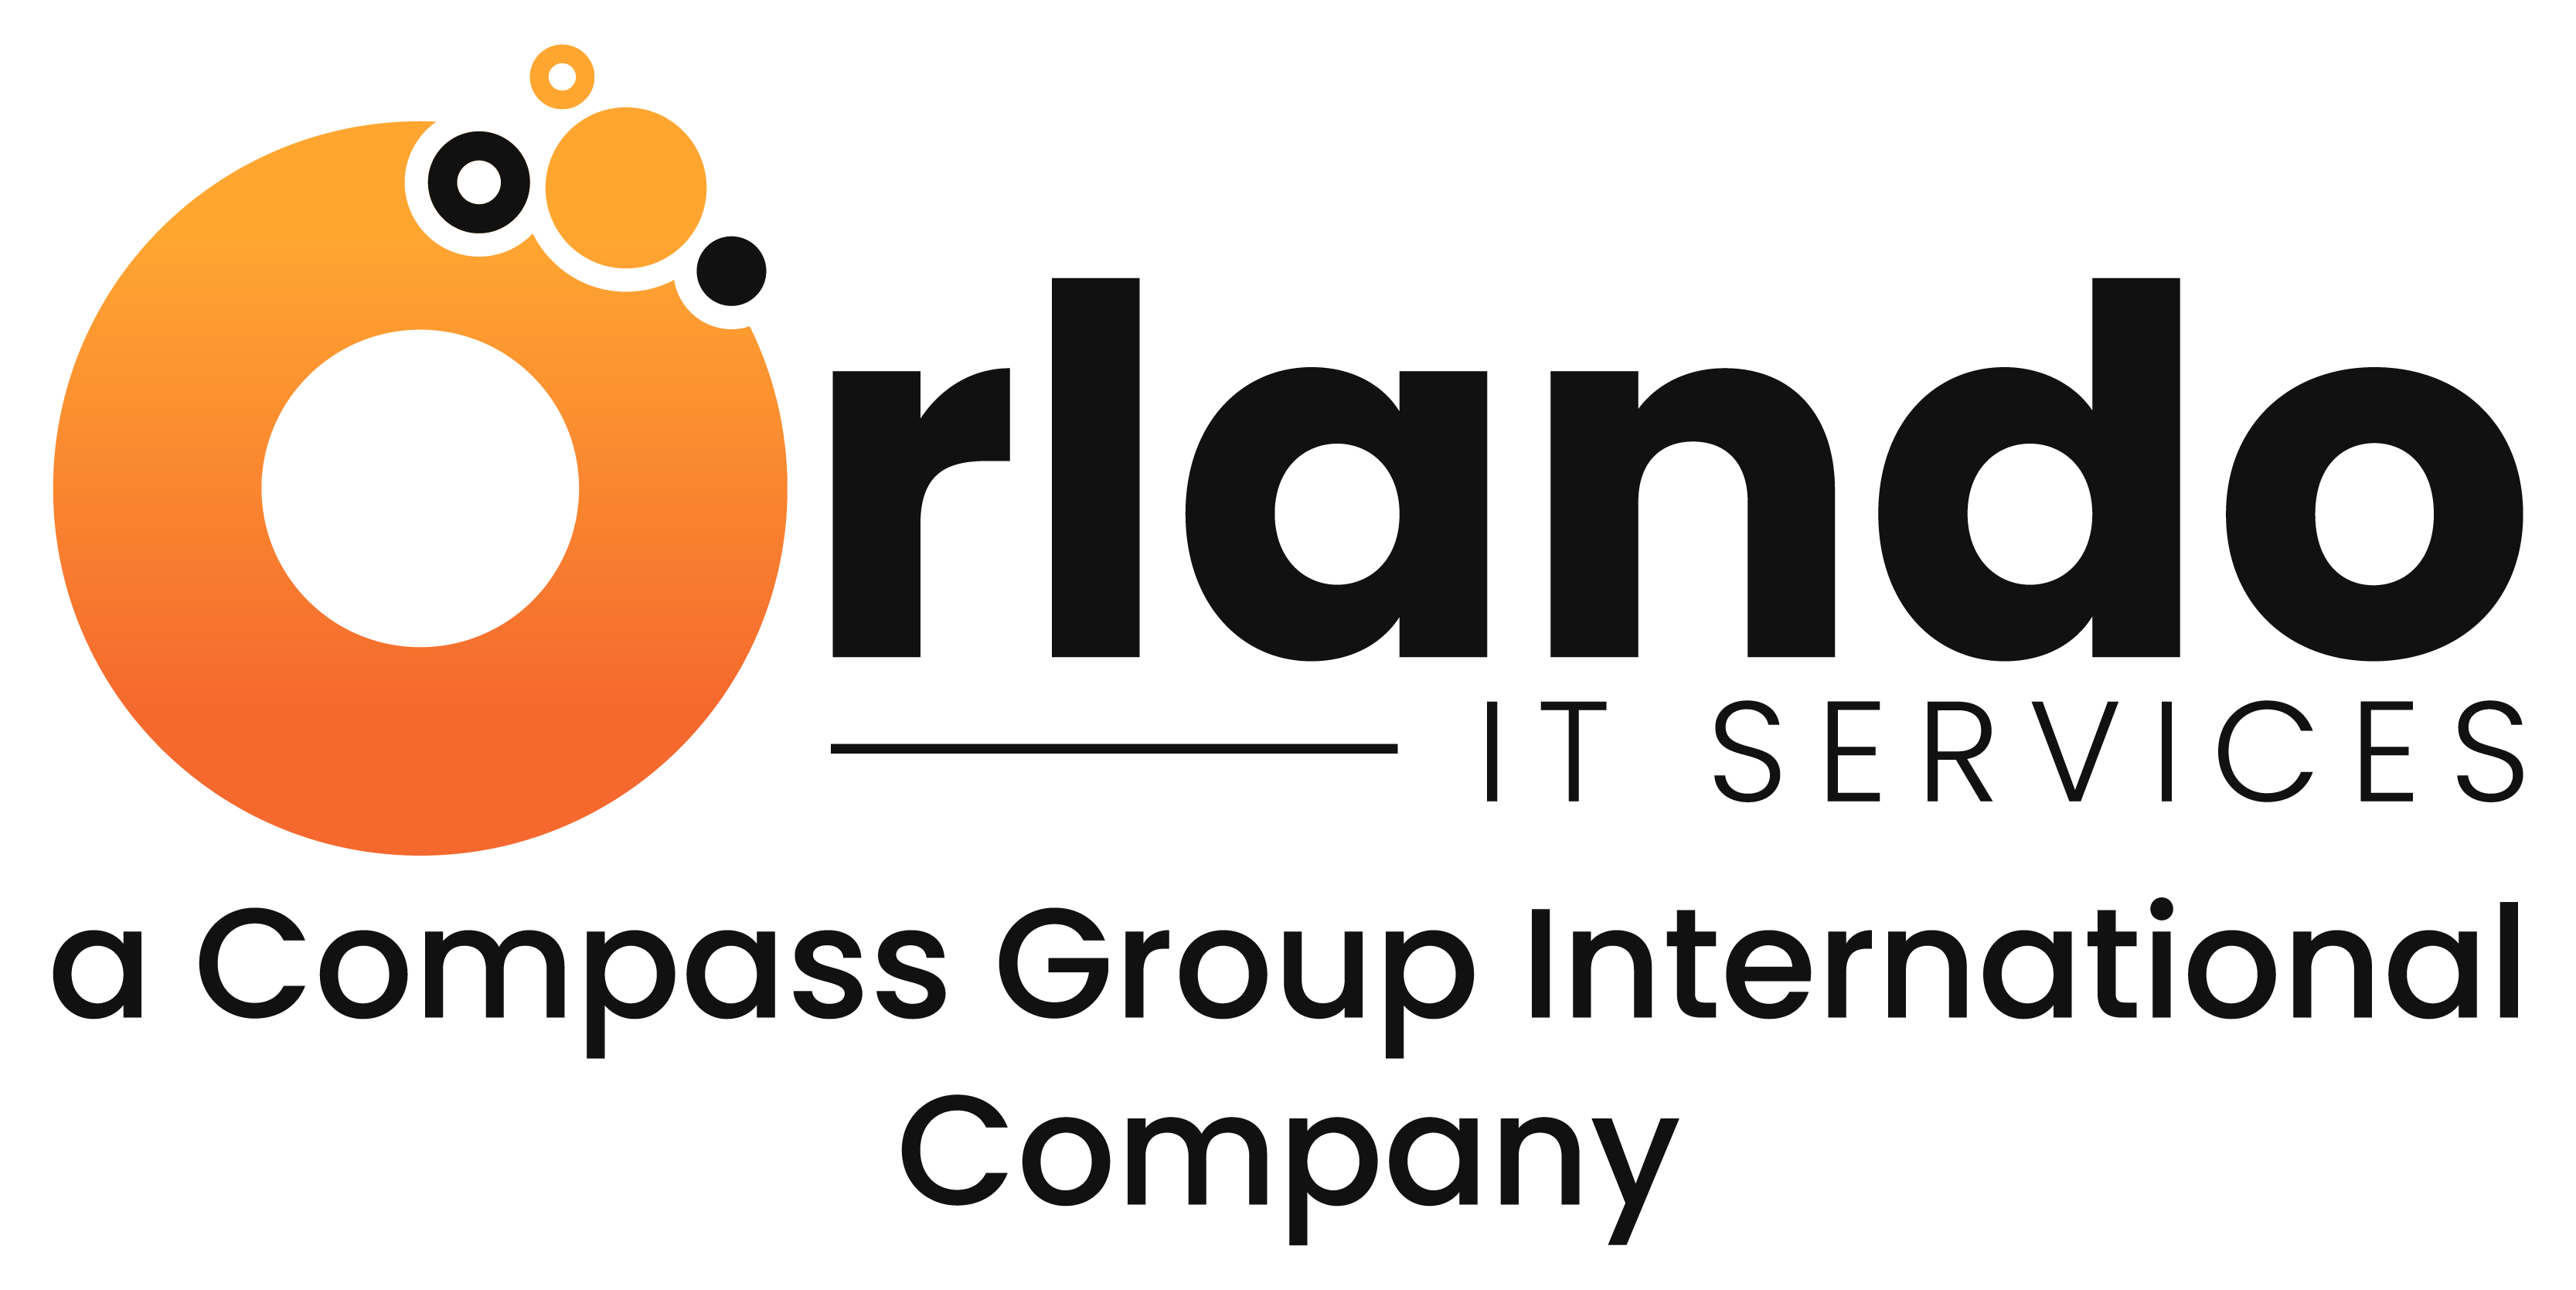 Orlando IT Services